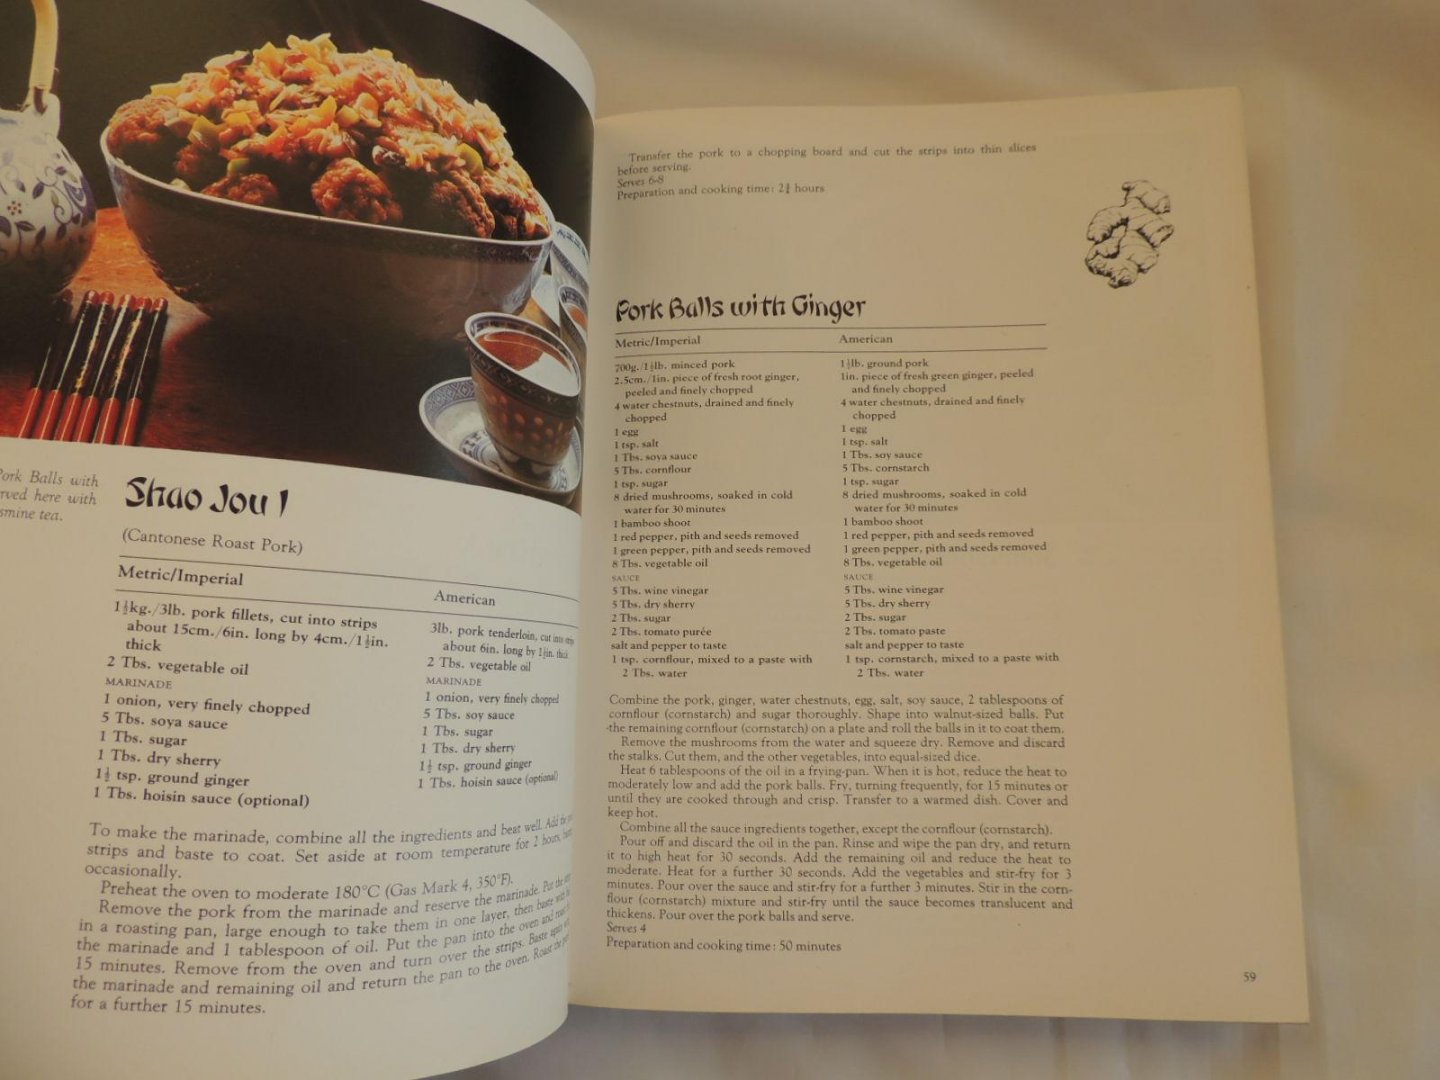 Isabel Moore; Jonnie Godfrey; - The Complete Oriental cookbook - cook book